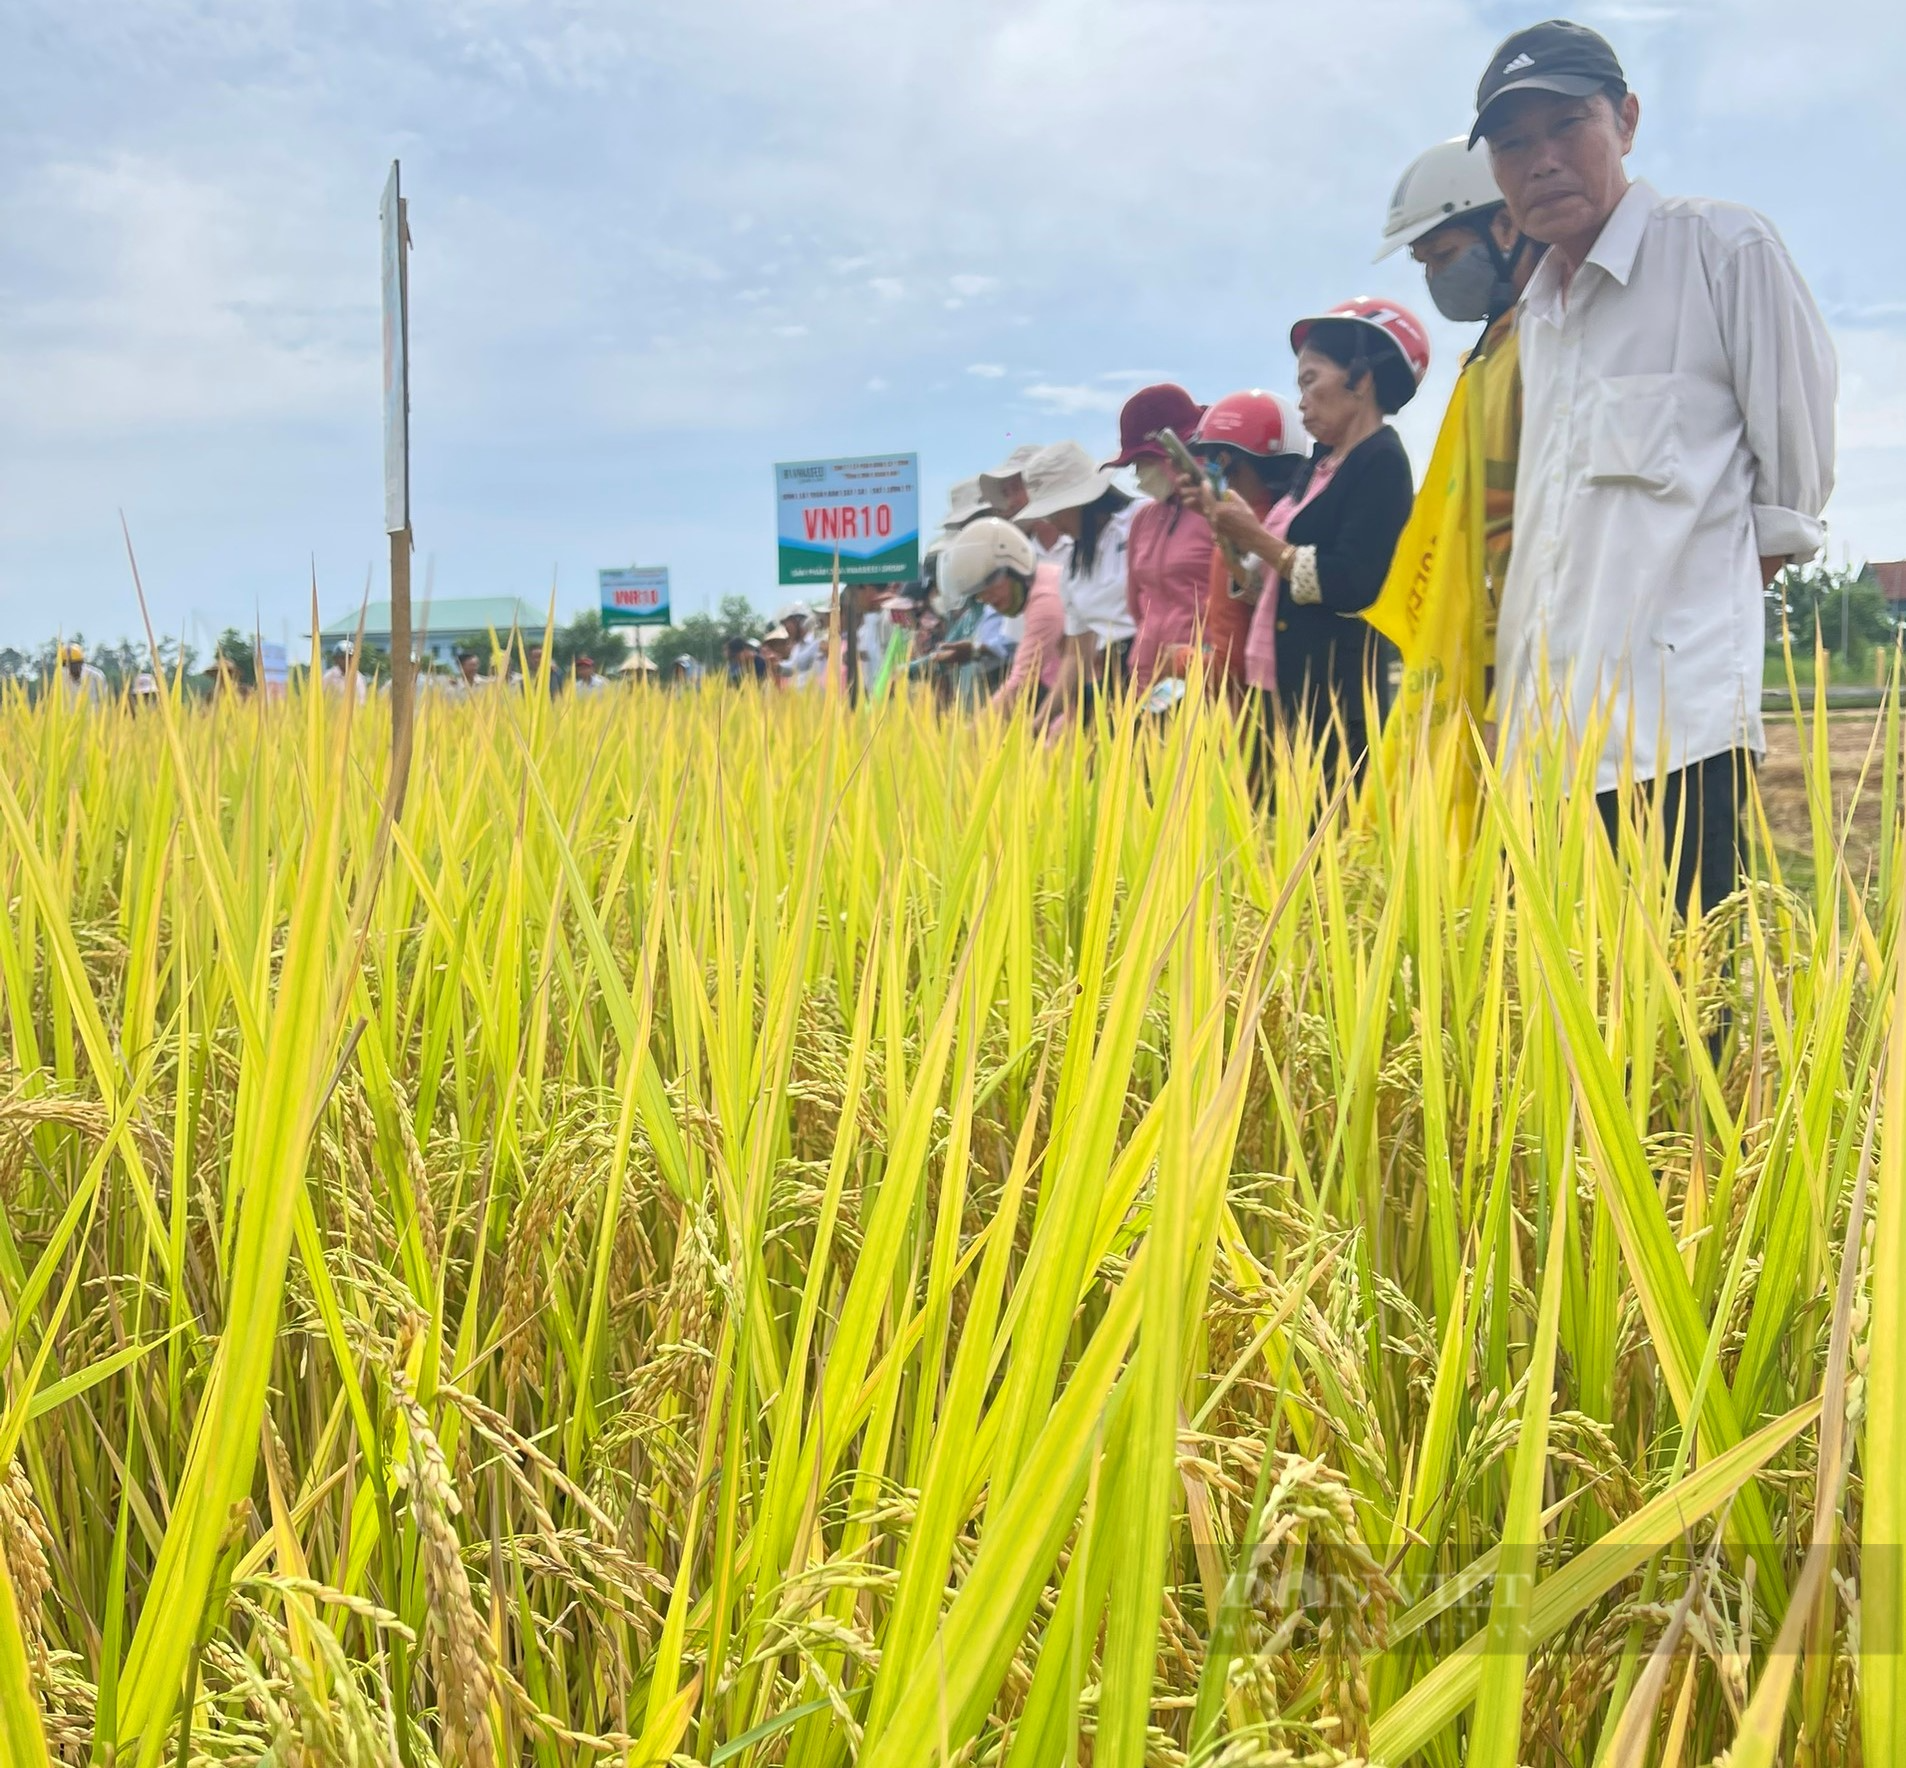 Trồng giống lúa mới của Vinaseed trên đất phèn, nông dân Quảng Nam bất ngờ bội thu - Ảnh 6.